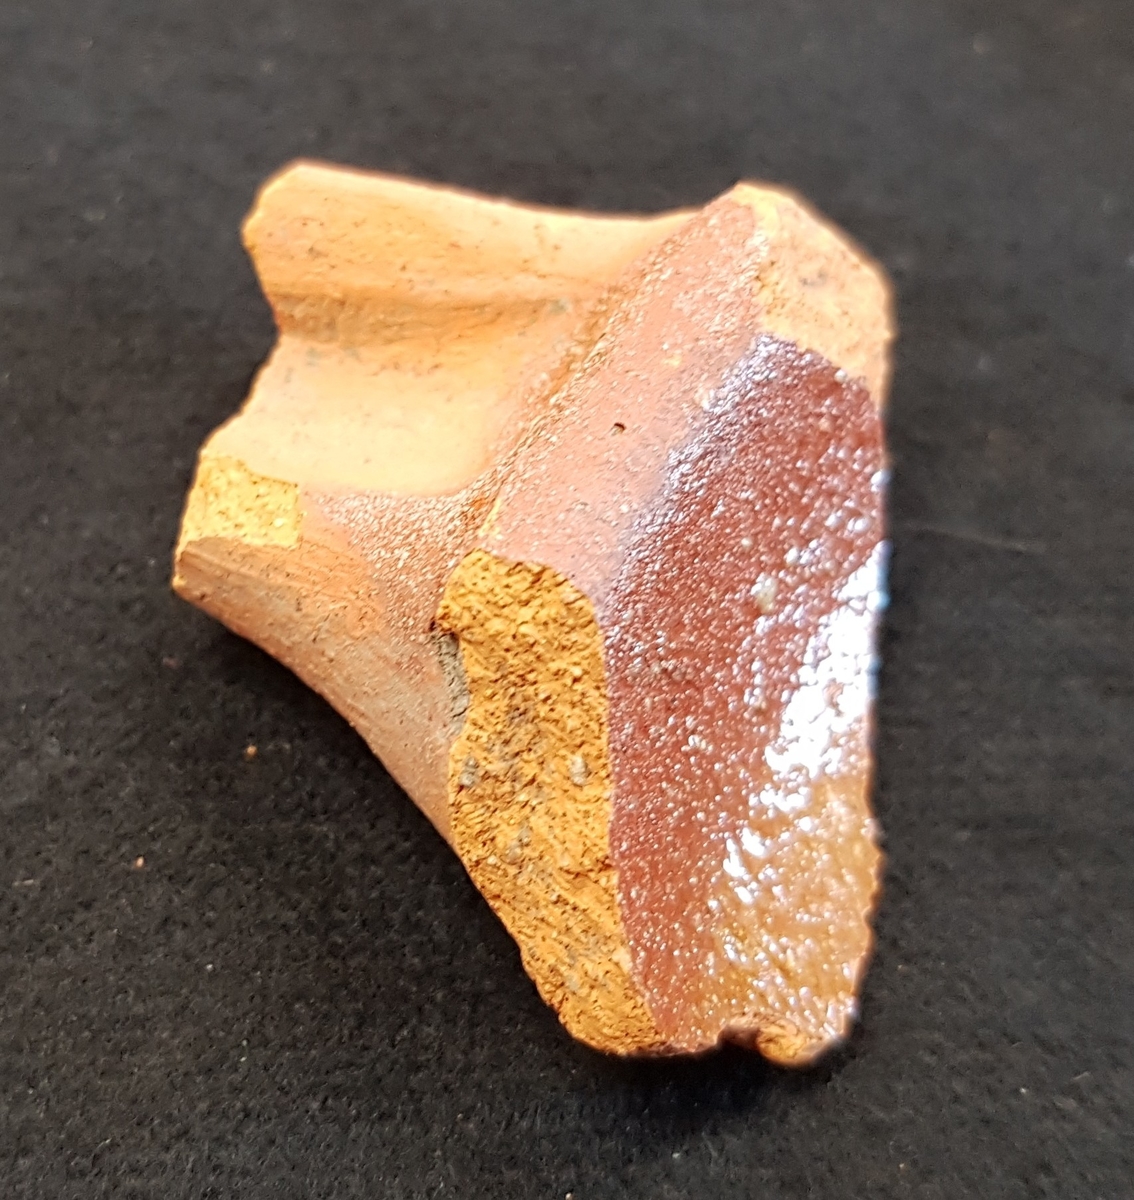 Fragment av stekpanna av lergods. Rödbrun glasyr. Infästningen av handtaget.

Funnen i anläggning S27.
Grävningsledaren ändrade sedan anläggningsbeteckningen i grävrapporten till K27.
Fynden kommer från en arkeologisk utgrävning/schaktövervakning av Brätte 1:8 ledd av Oscar Ortman 2018.